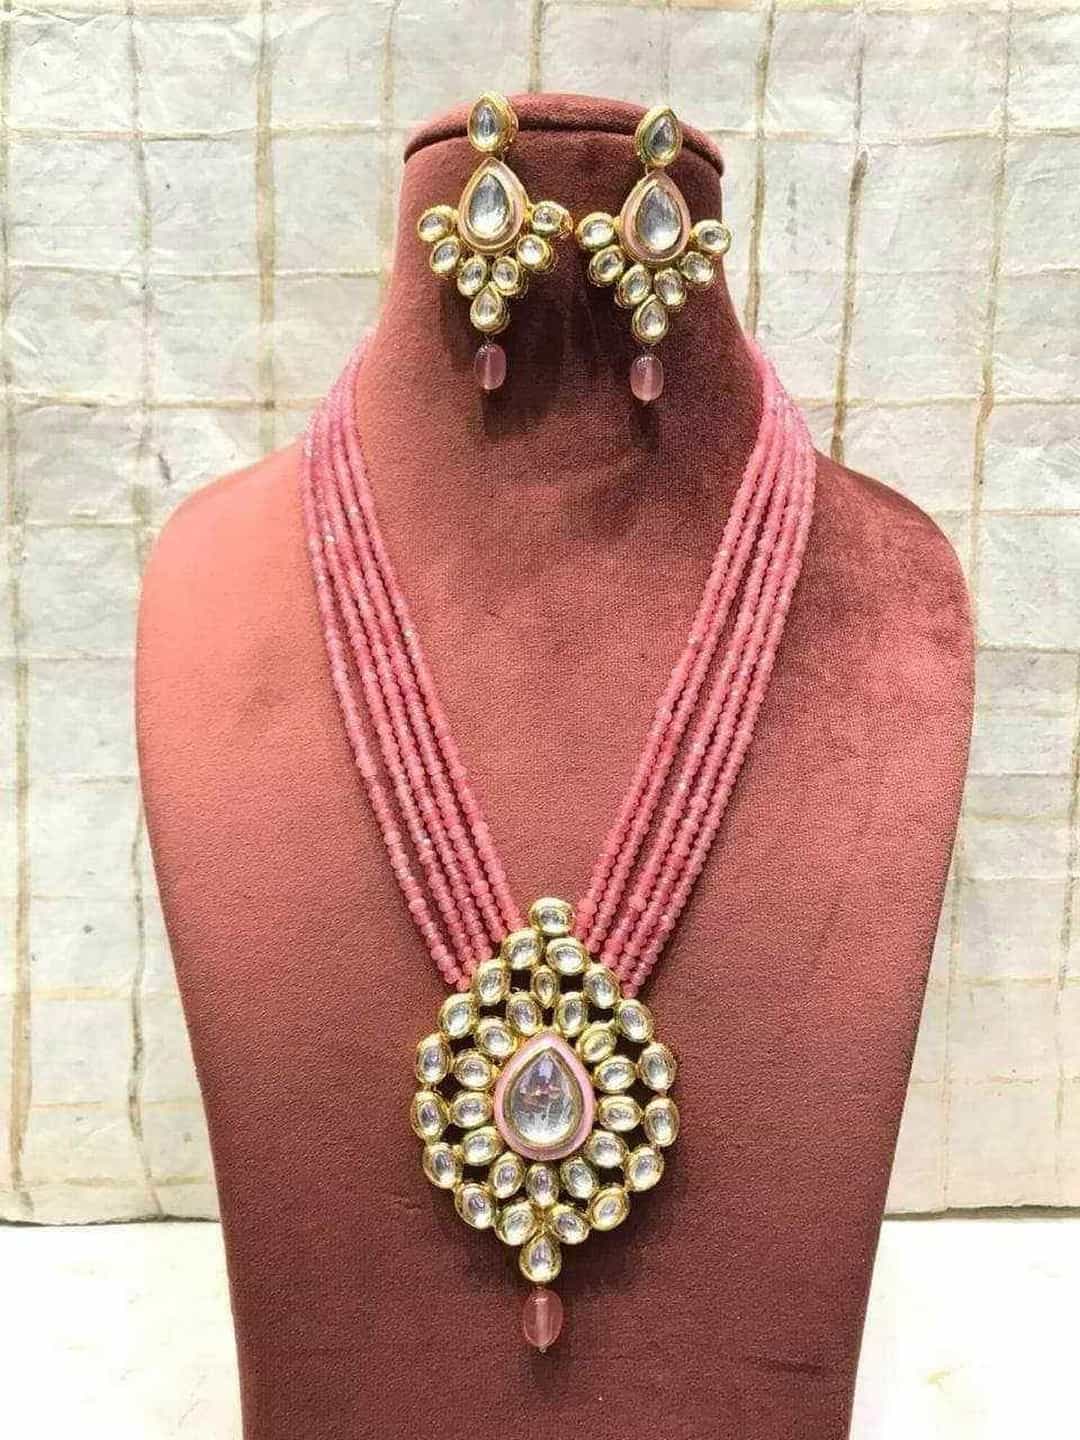 Ishhaara Blue Center Drop Pendant Necklace